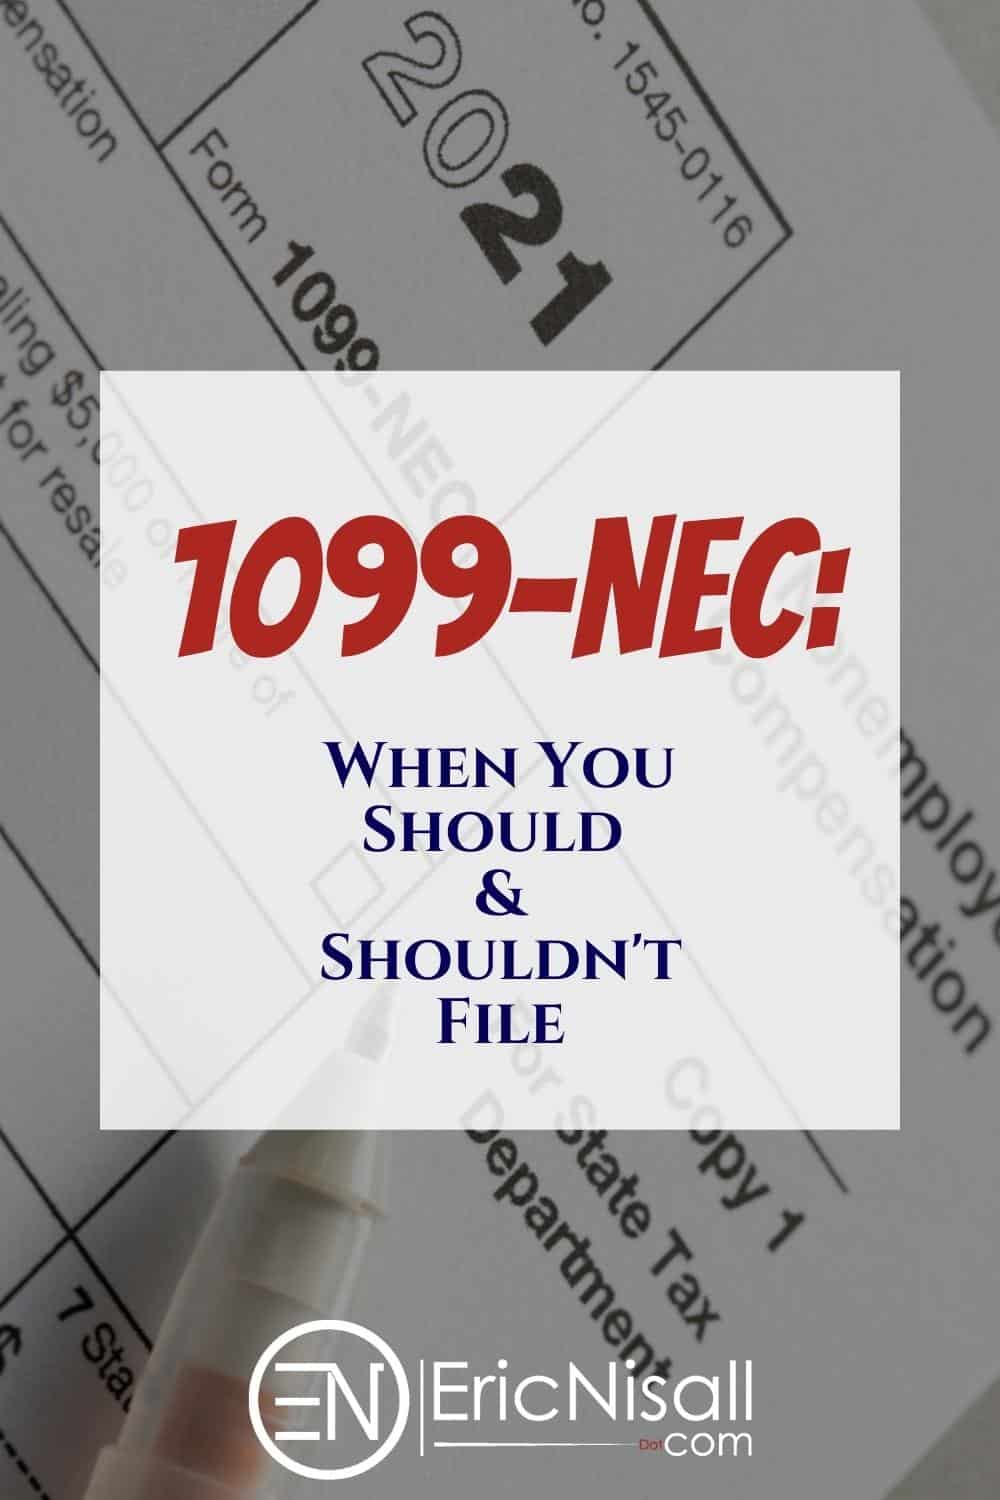 IRS Form 1099-NEC via @ericnisall